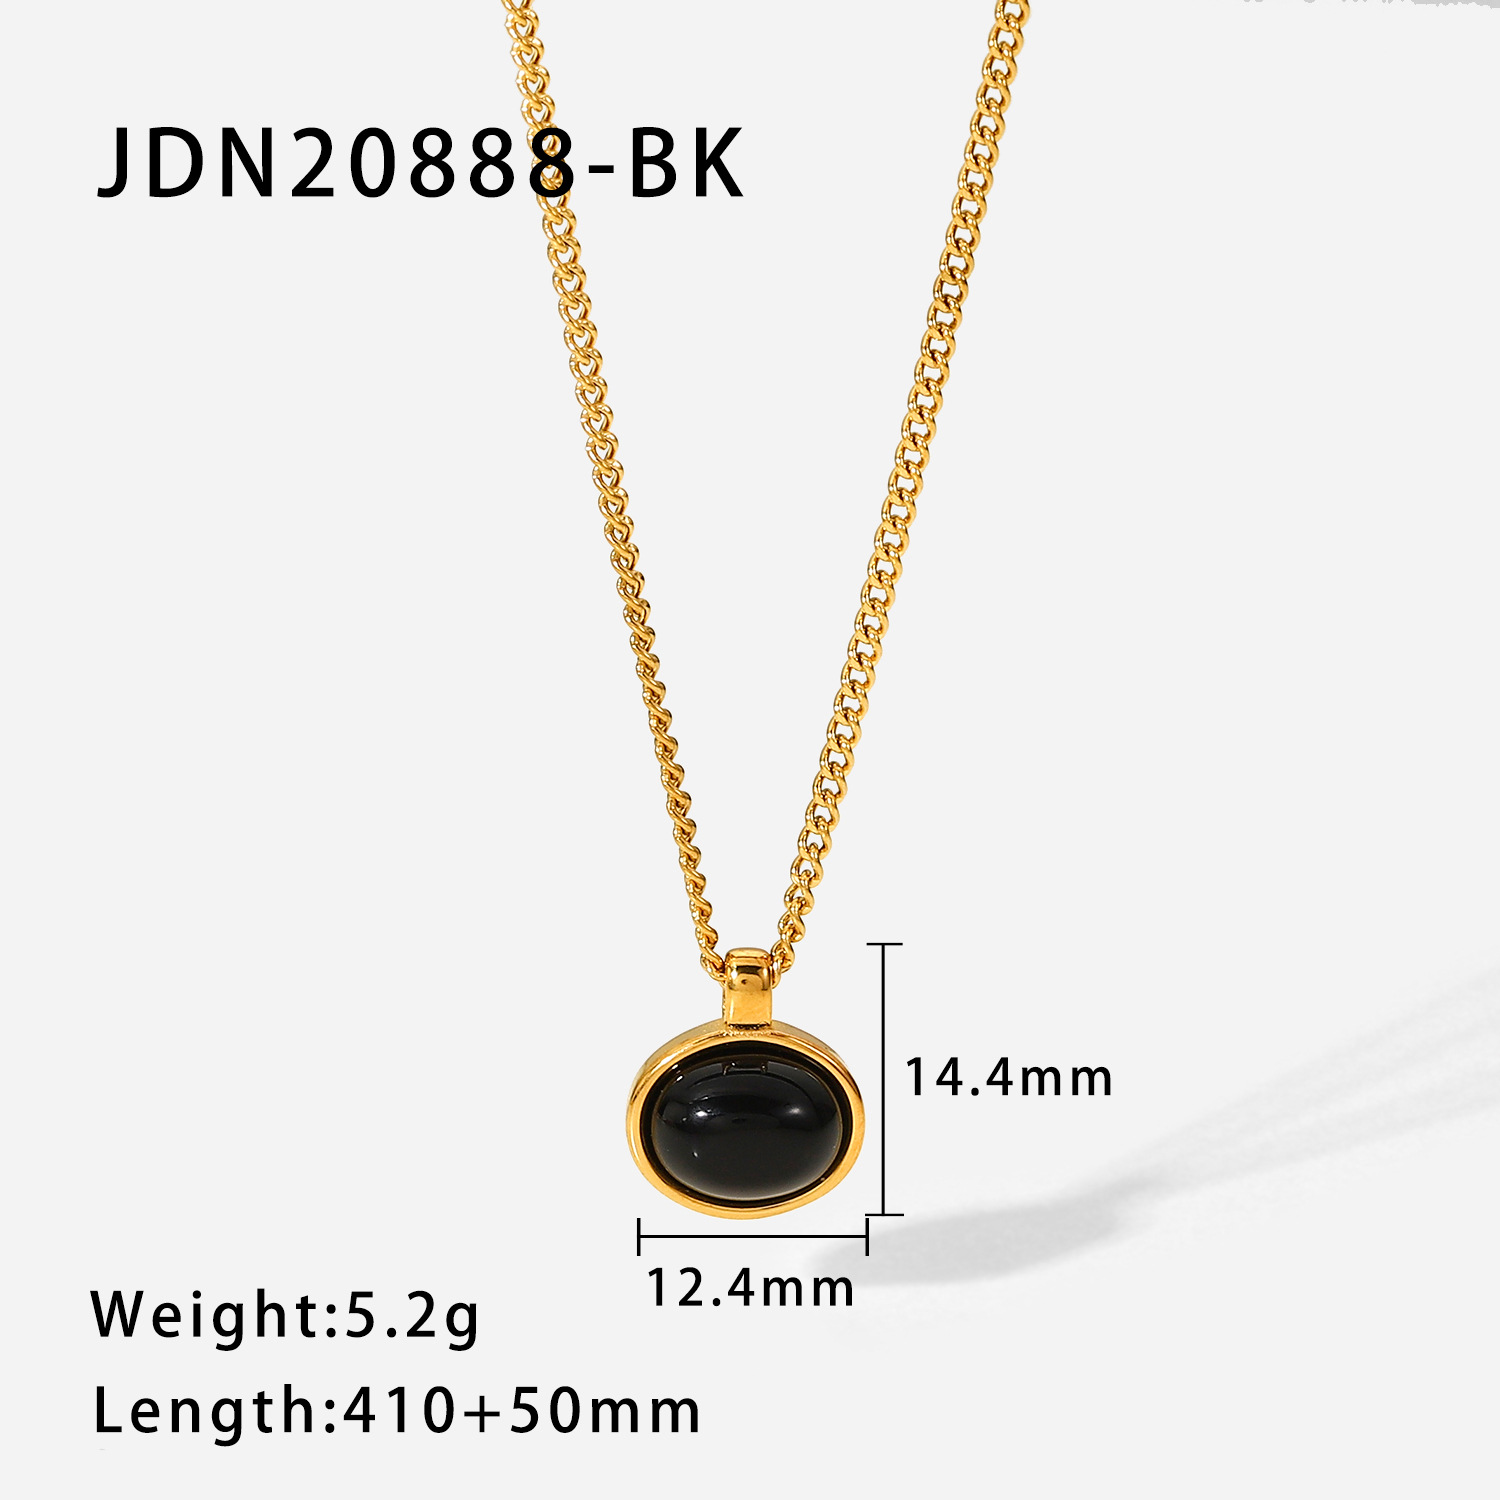 JDN20888-BK